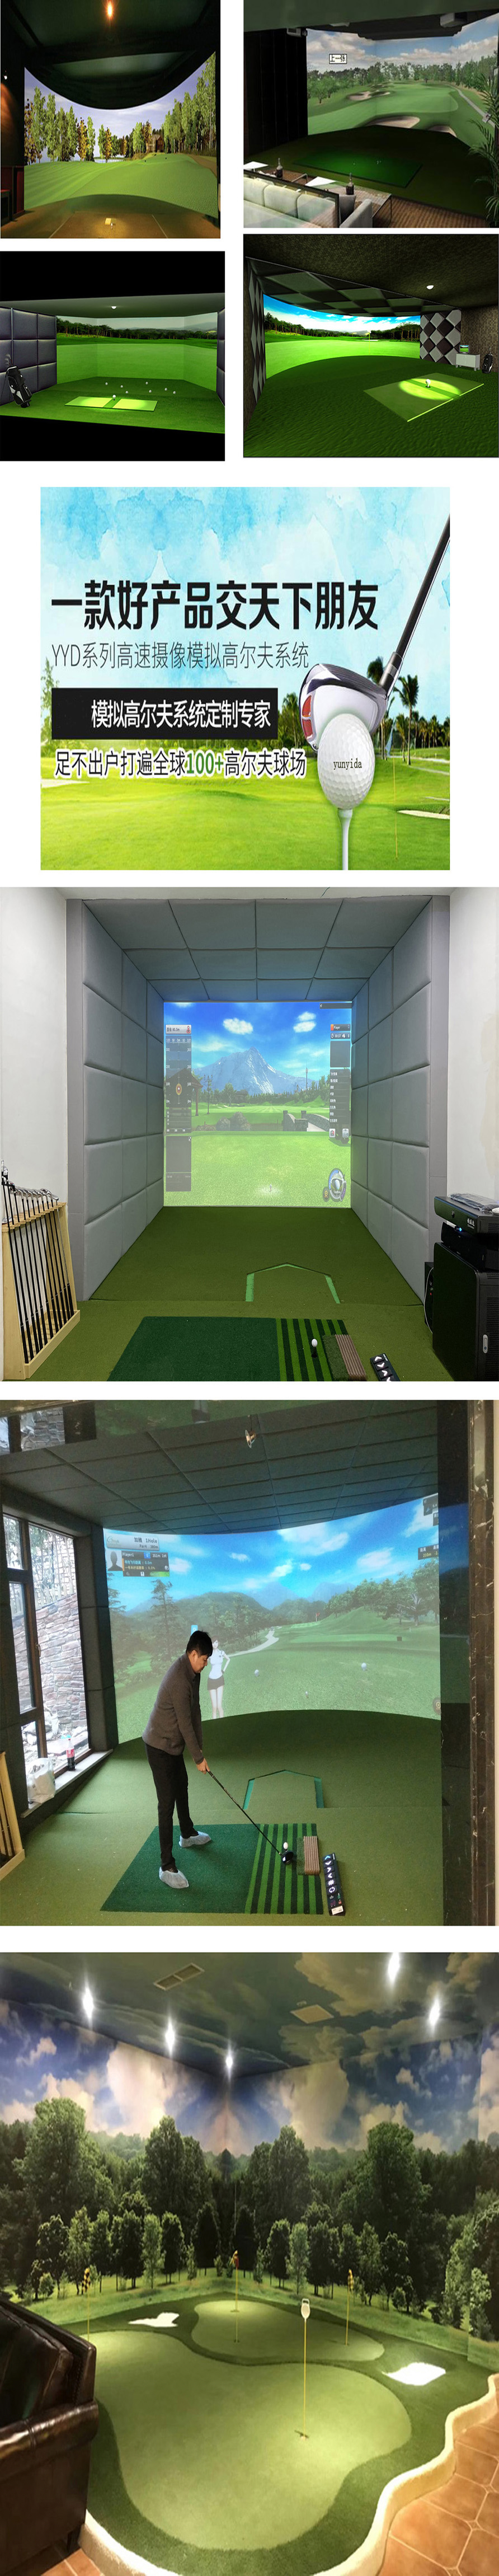 模拟室内高尔夫特点 2.jpg